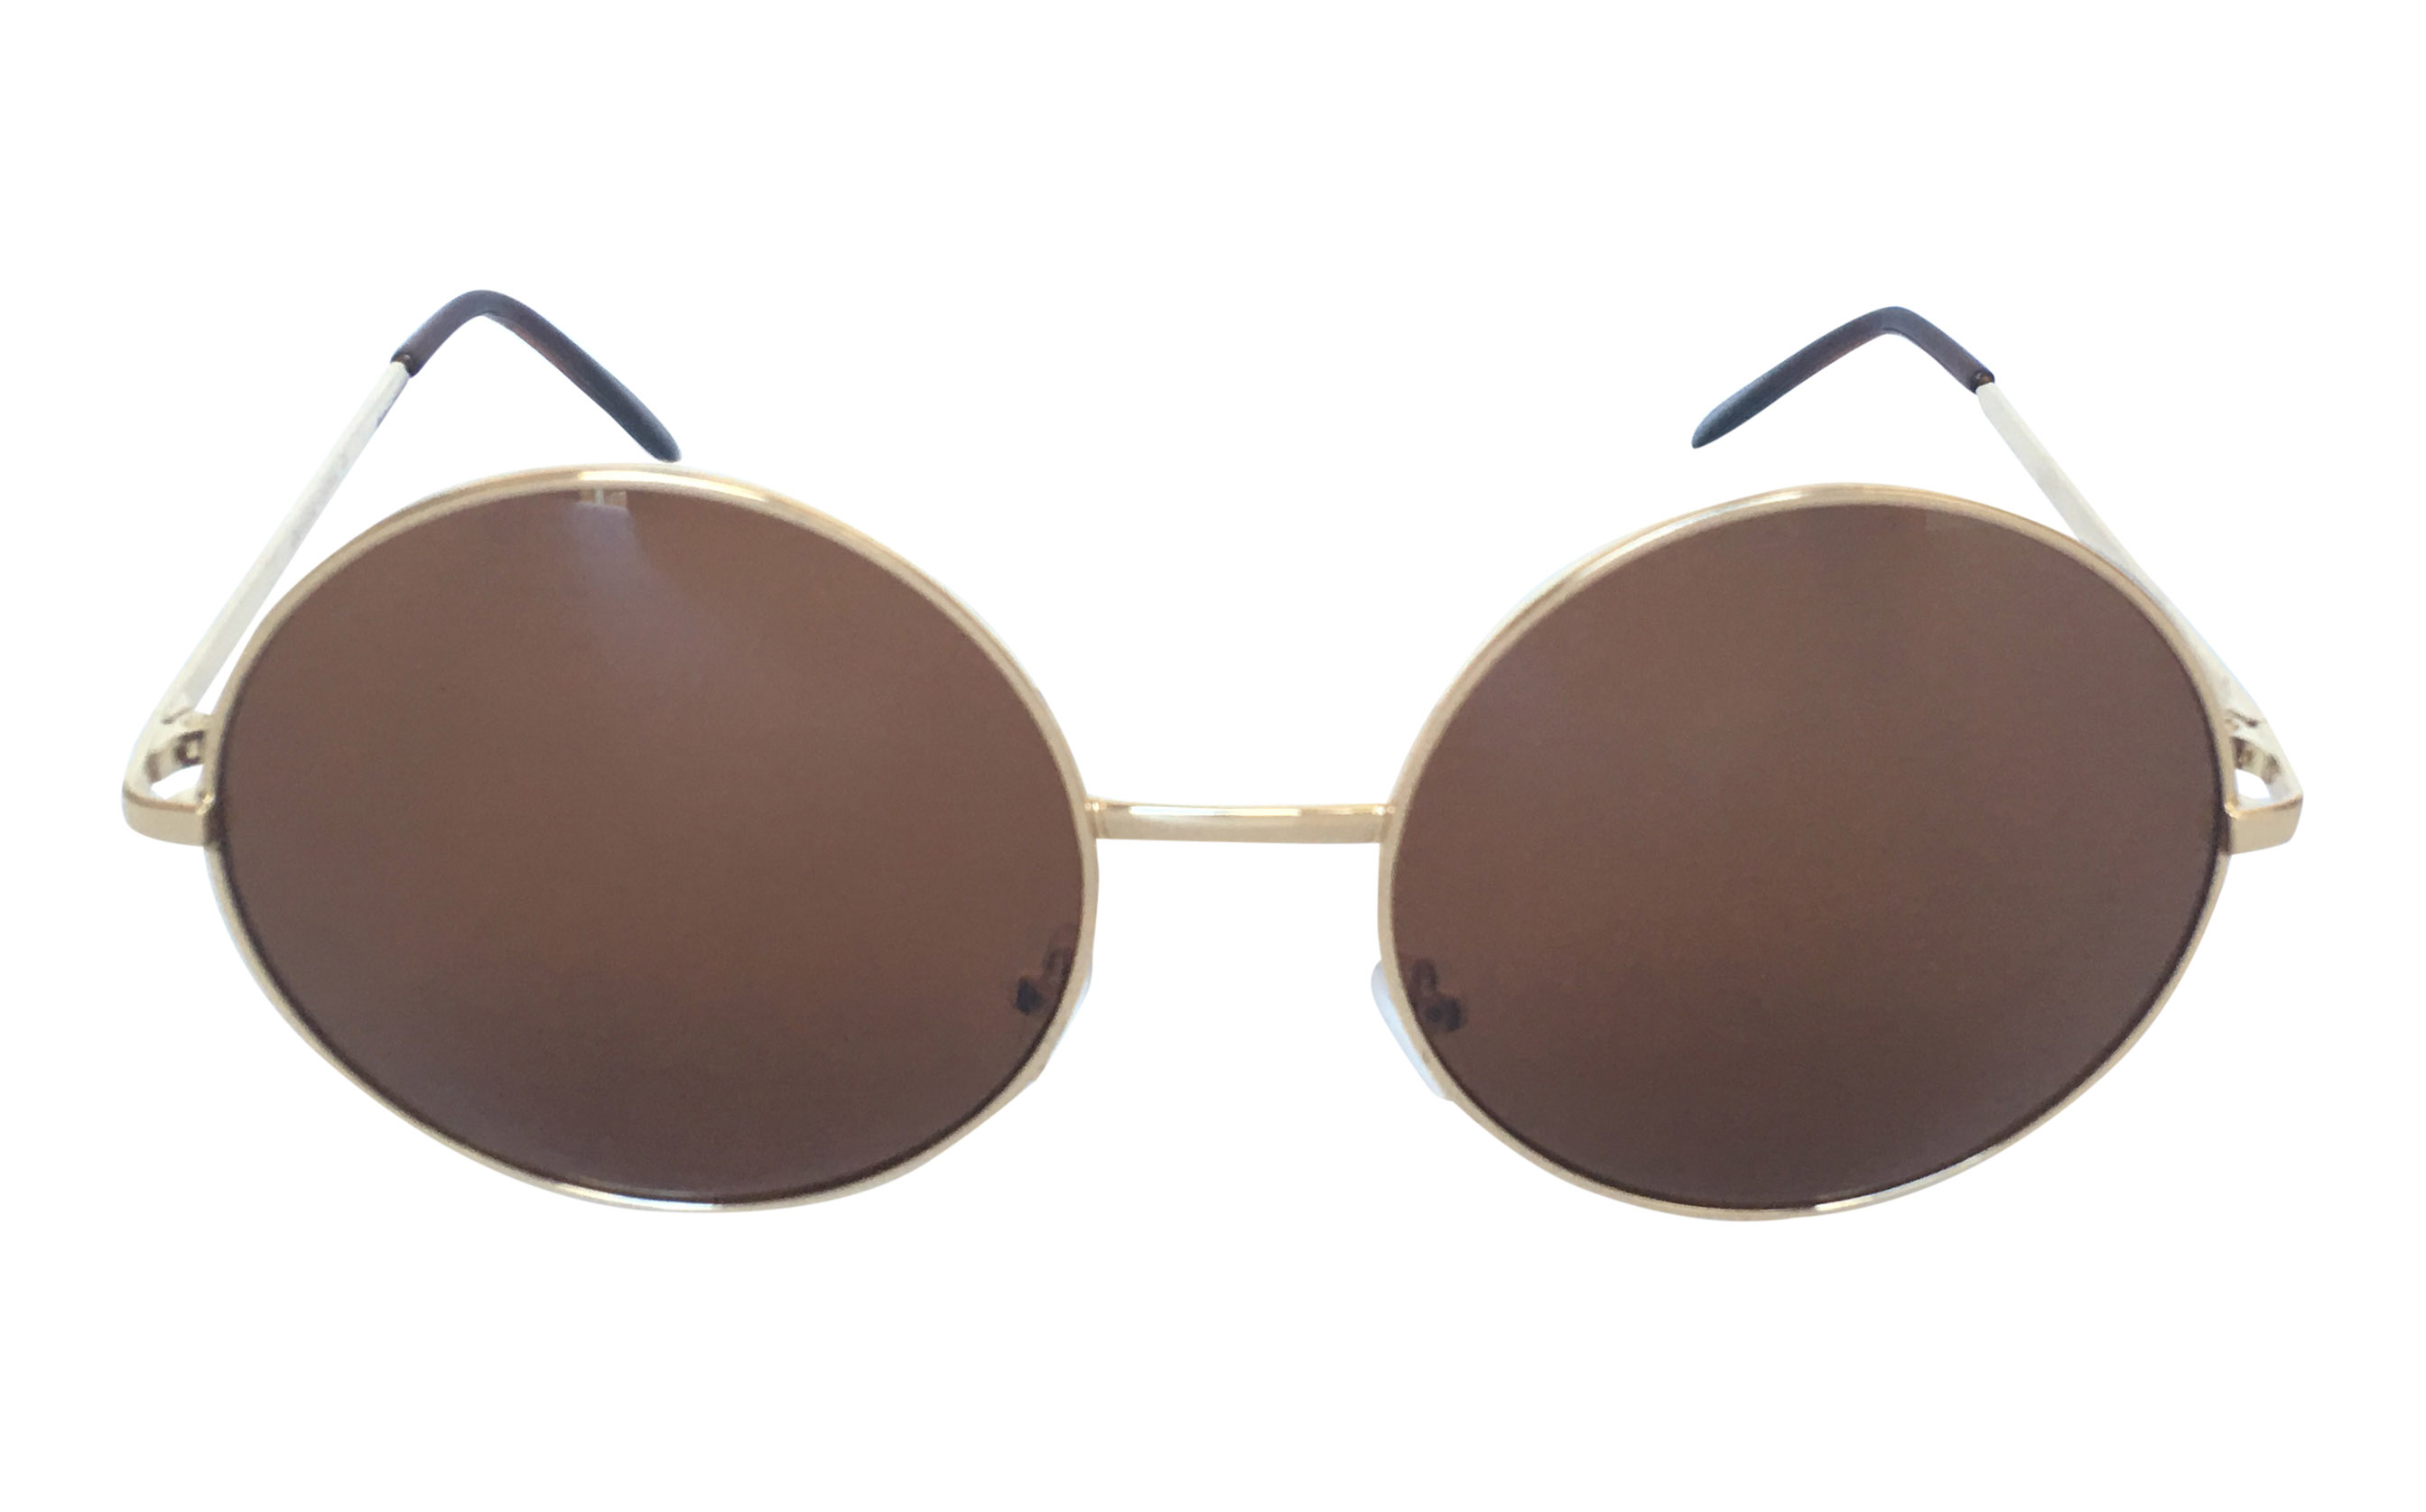 Stor guldfarvet rund solbrille med brune linser - Design nr. 3305